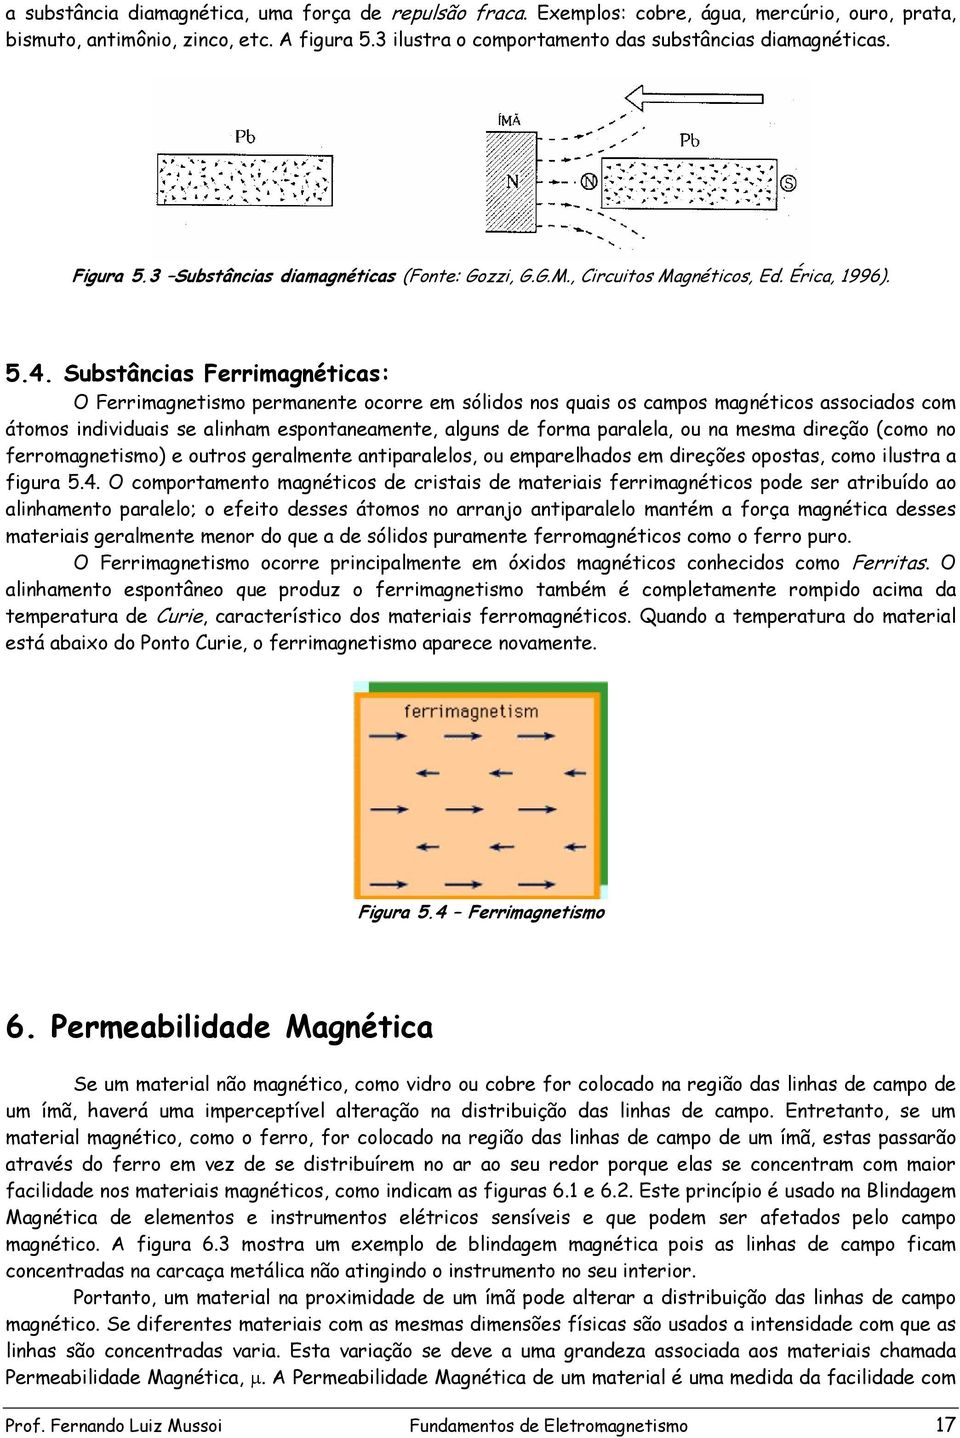 Substâncias Ferrimagnéticas: O Ferrimagnetismo permanente ocorre em sólidos nos quais os campos magnéticos associados com átomos individuais se alinham espontaneamente, alguns de forma paralela, ou